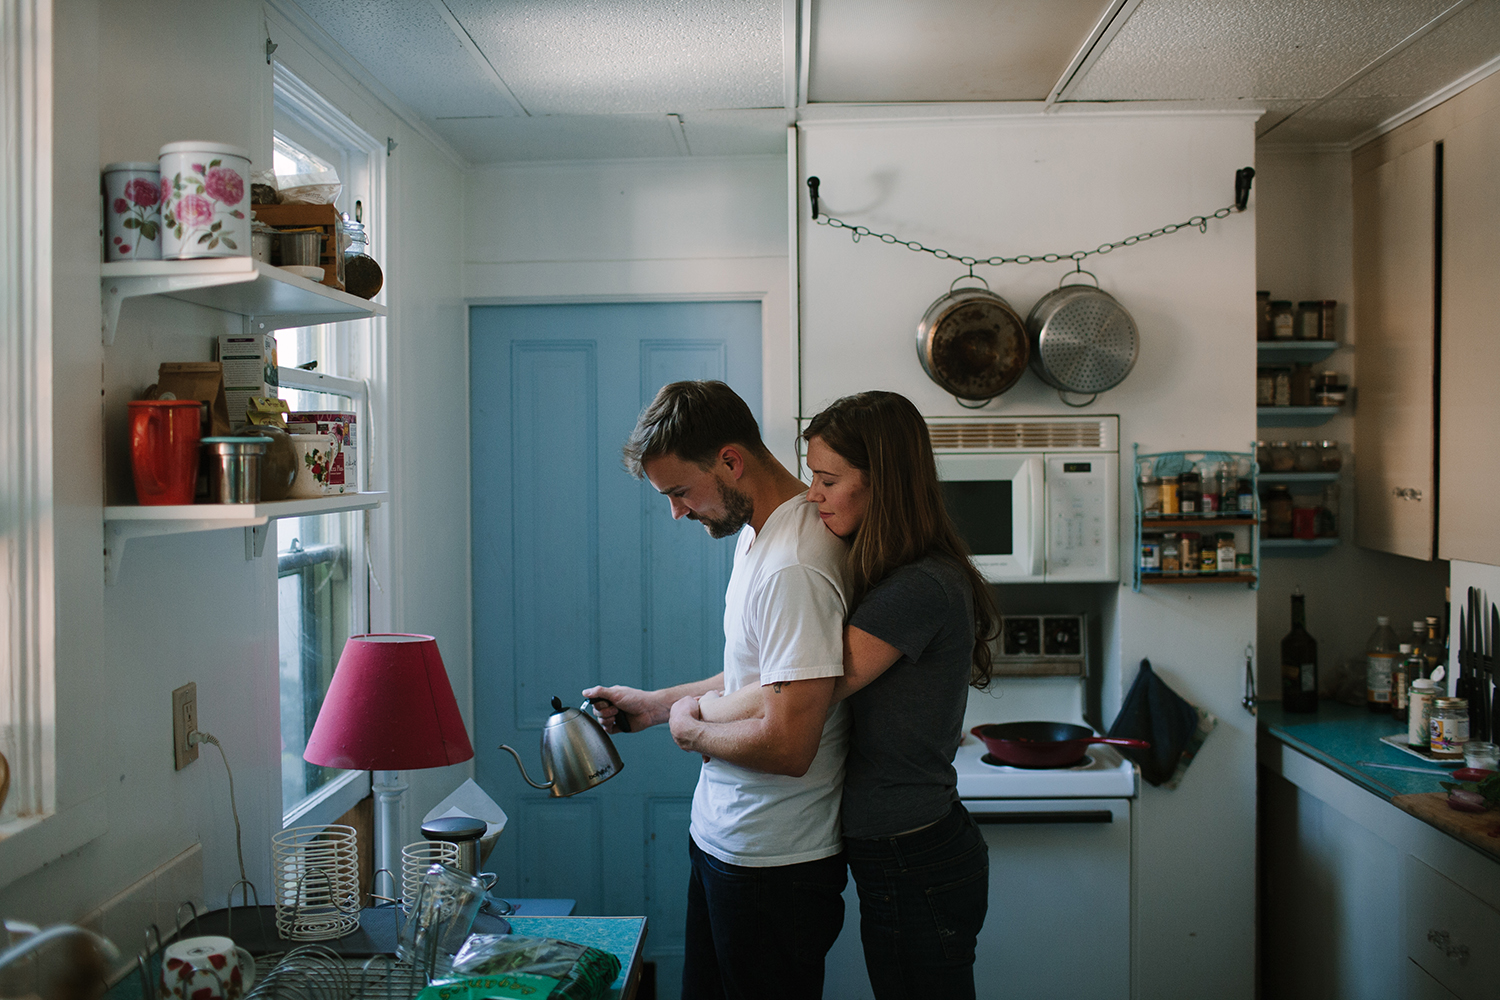 Снится жить вместе. Парень и девушка в квартире. Любовь в квартире. Мужчина и женщина живут вместе. Пара в квартире на кухне.